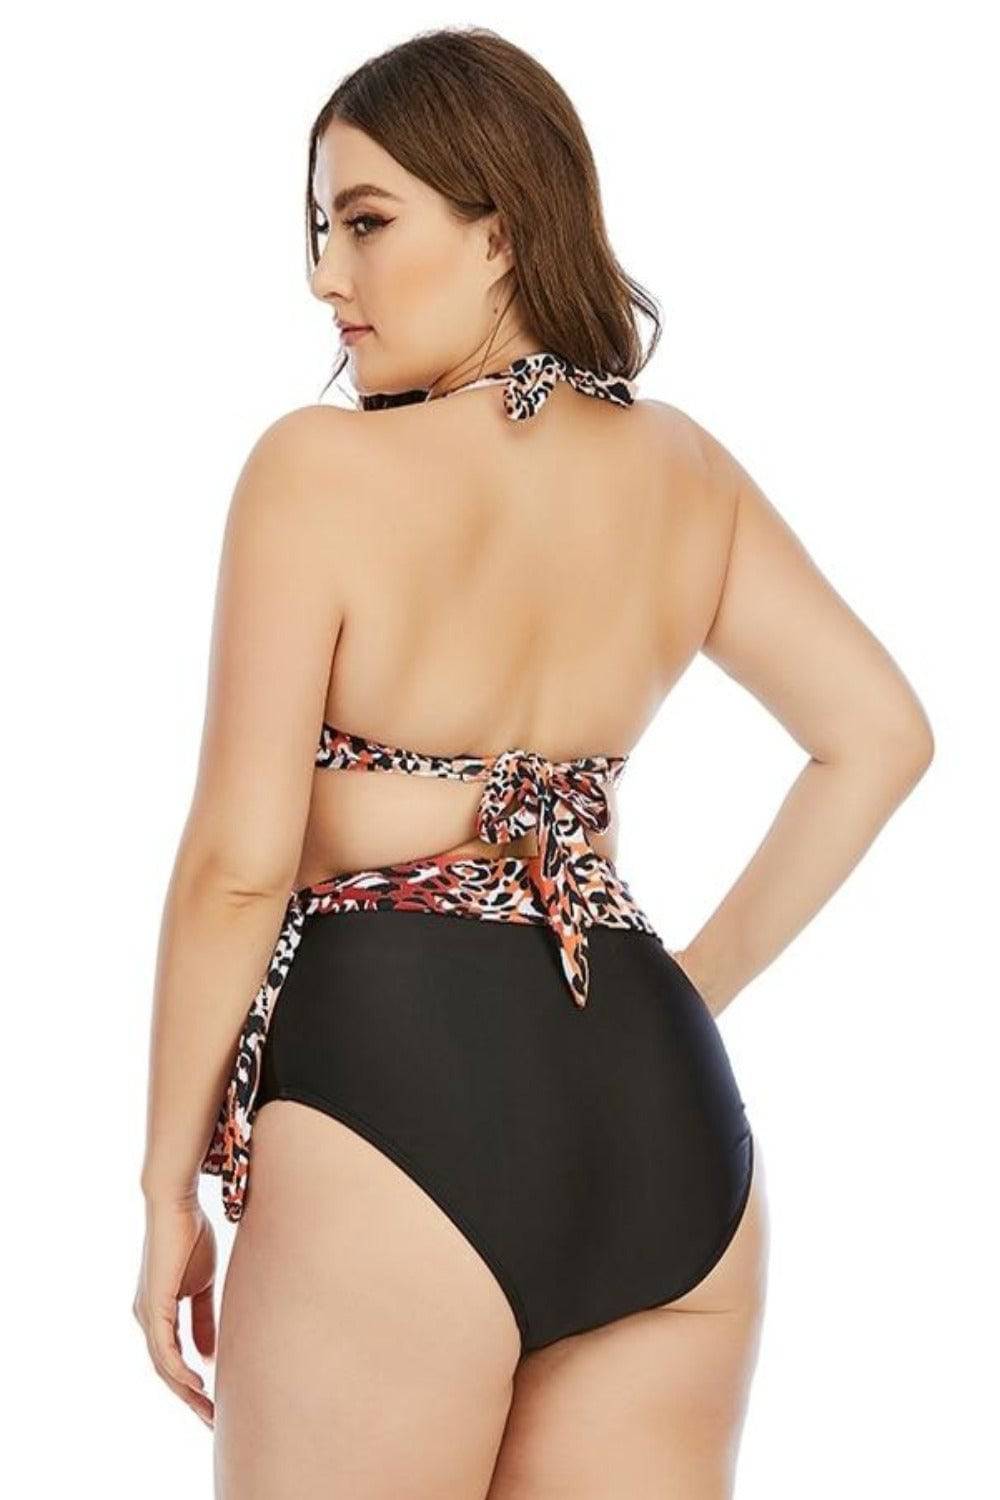 https://tgcboutique.com/cdn/shop/products/leopard-two-piece-plus-size-tummy-control-high-waist-bikini-swimsuit-plus-size-swimsuit-839079.jpg?v=1704441629&width=1000